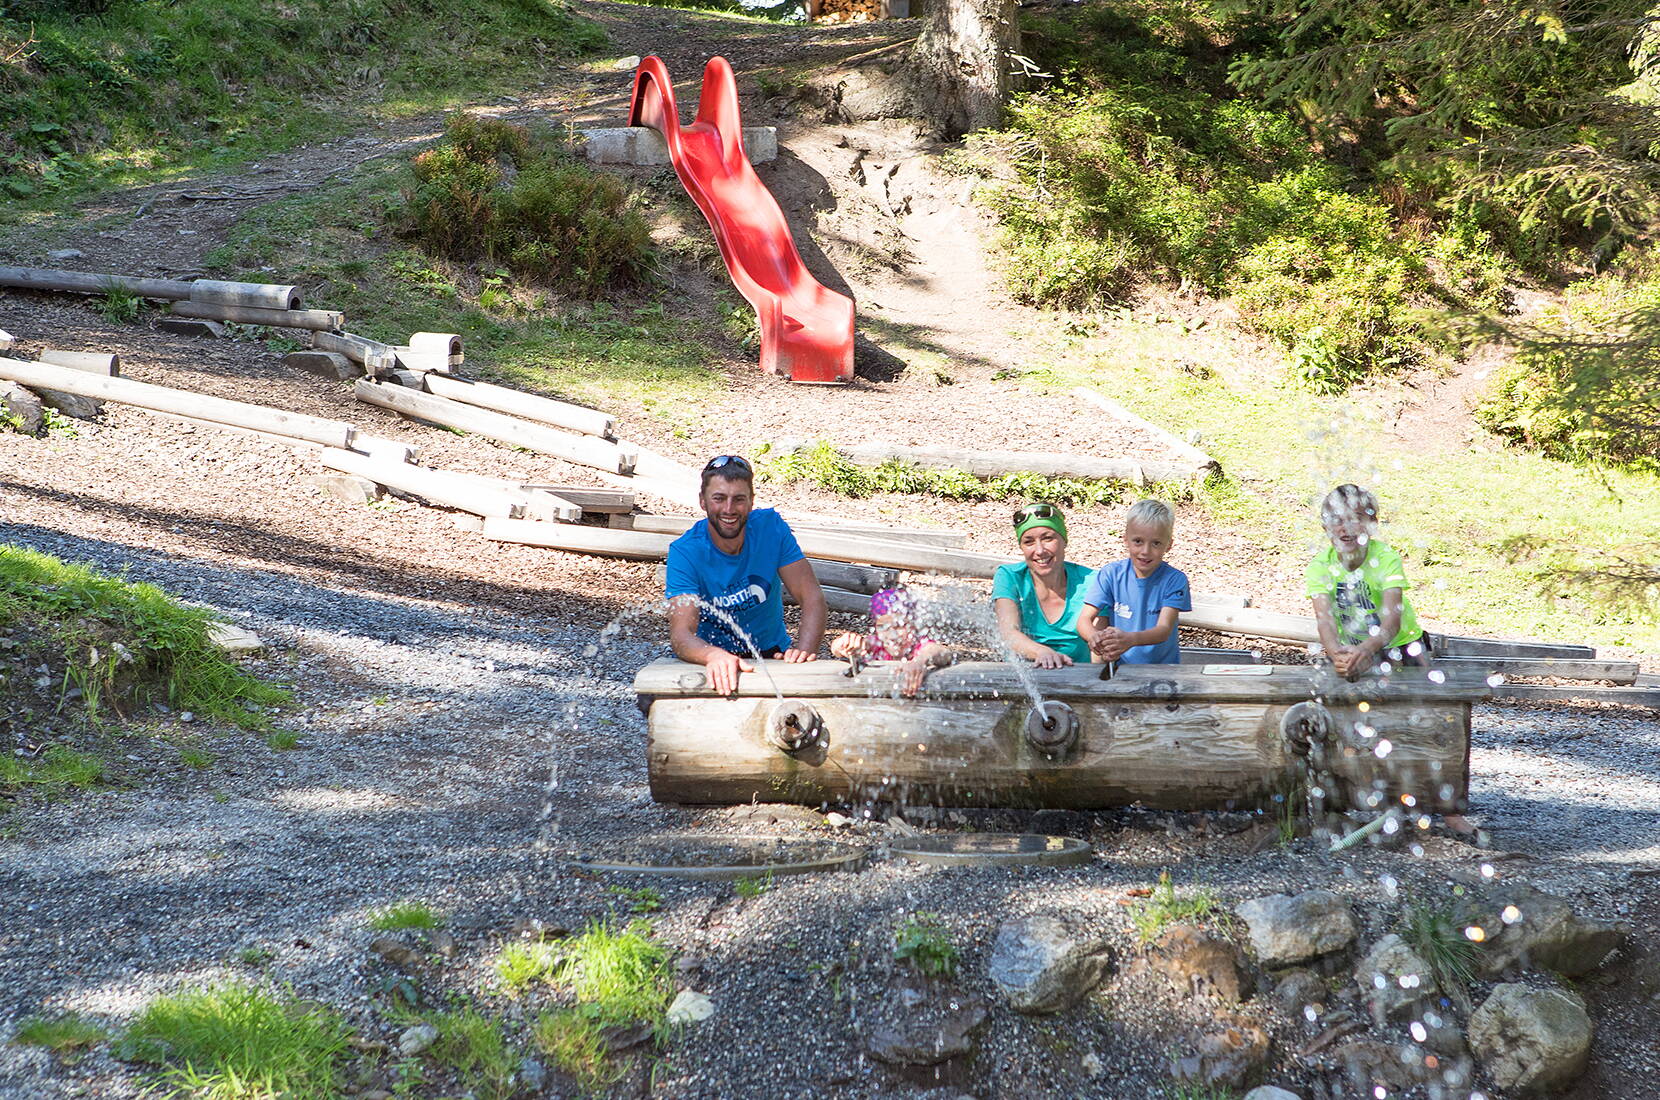 Familienausflug Wasserwald Pizol. Der Wasserspielplatz liegt in einer idyllischen Waldlichtung mit Bach und Wasserfall auf der Furt am Pizol.